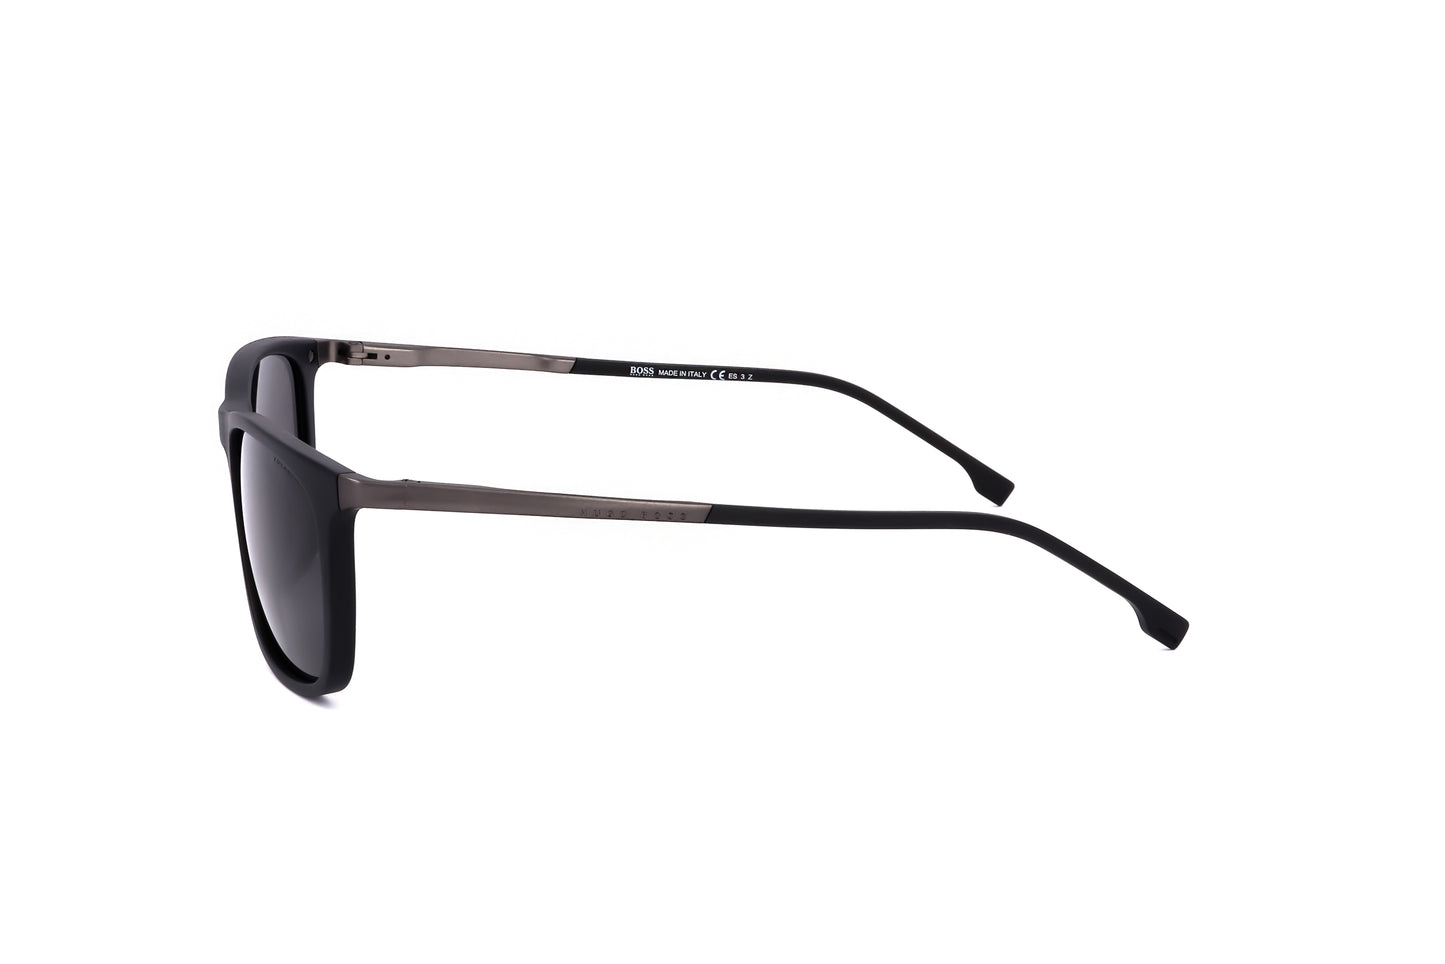 Hugo Boss Mens Sunglasses BOSS 1249 S IT 003 56 16 145 MATTE BLACK